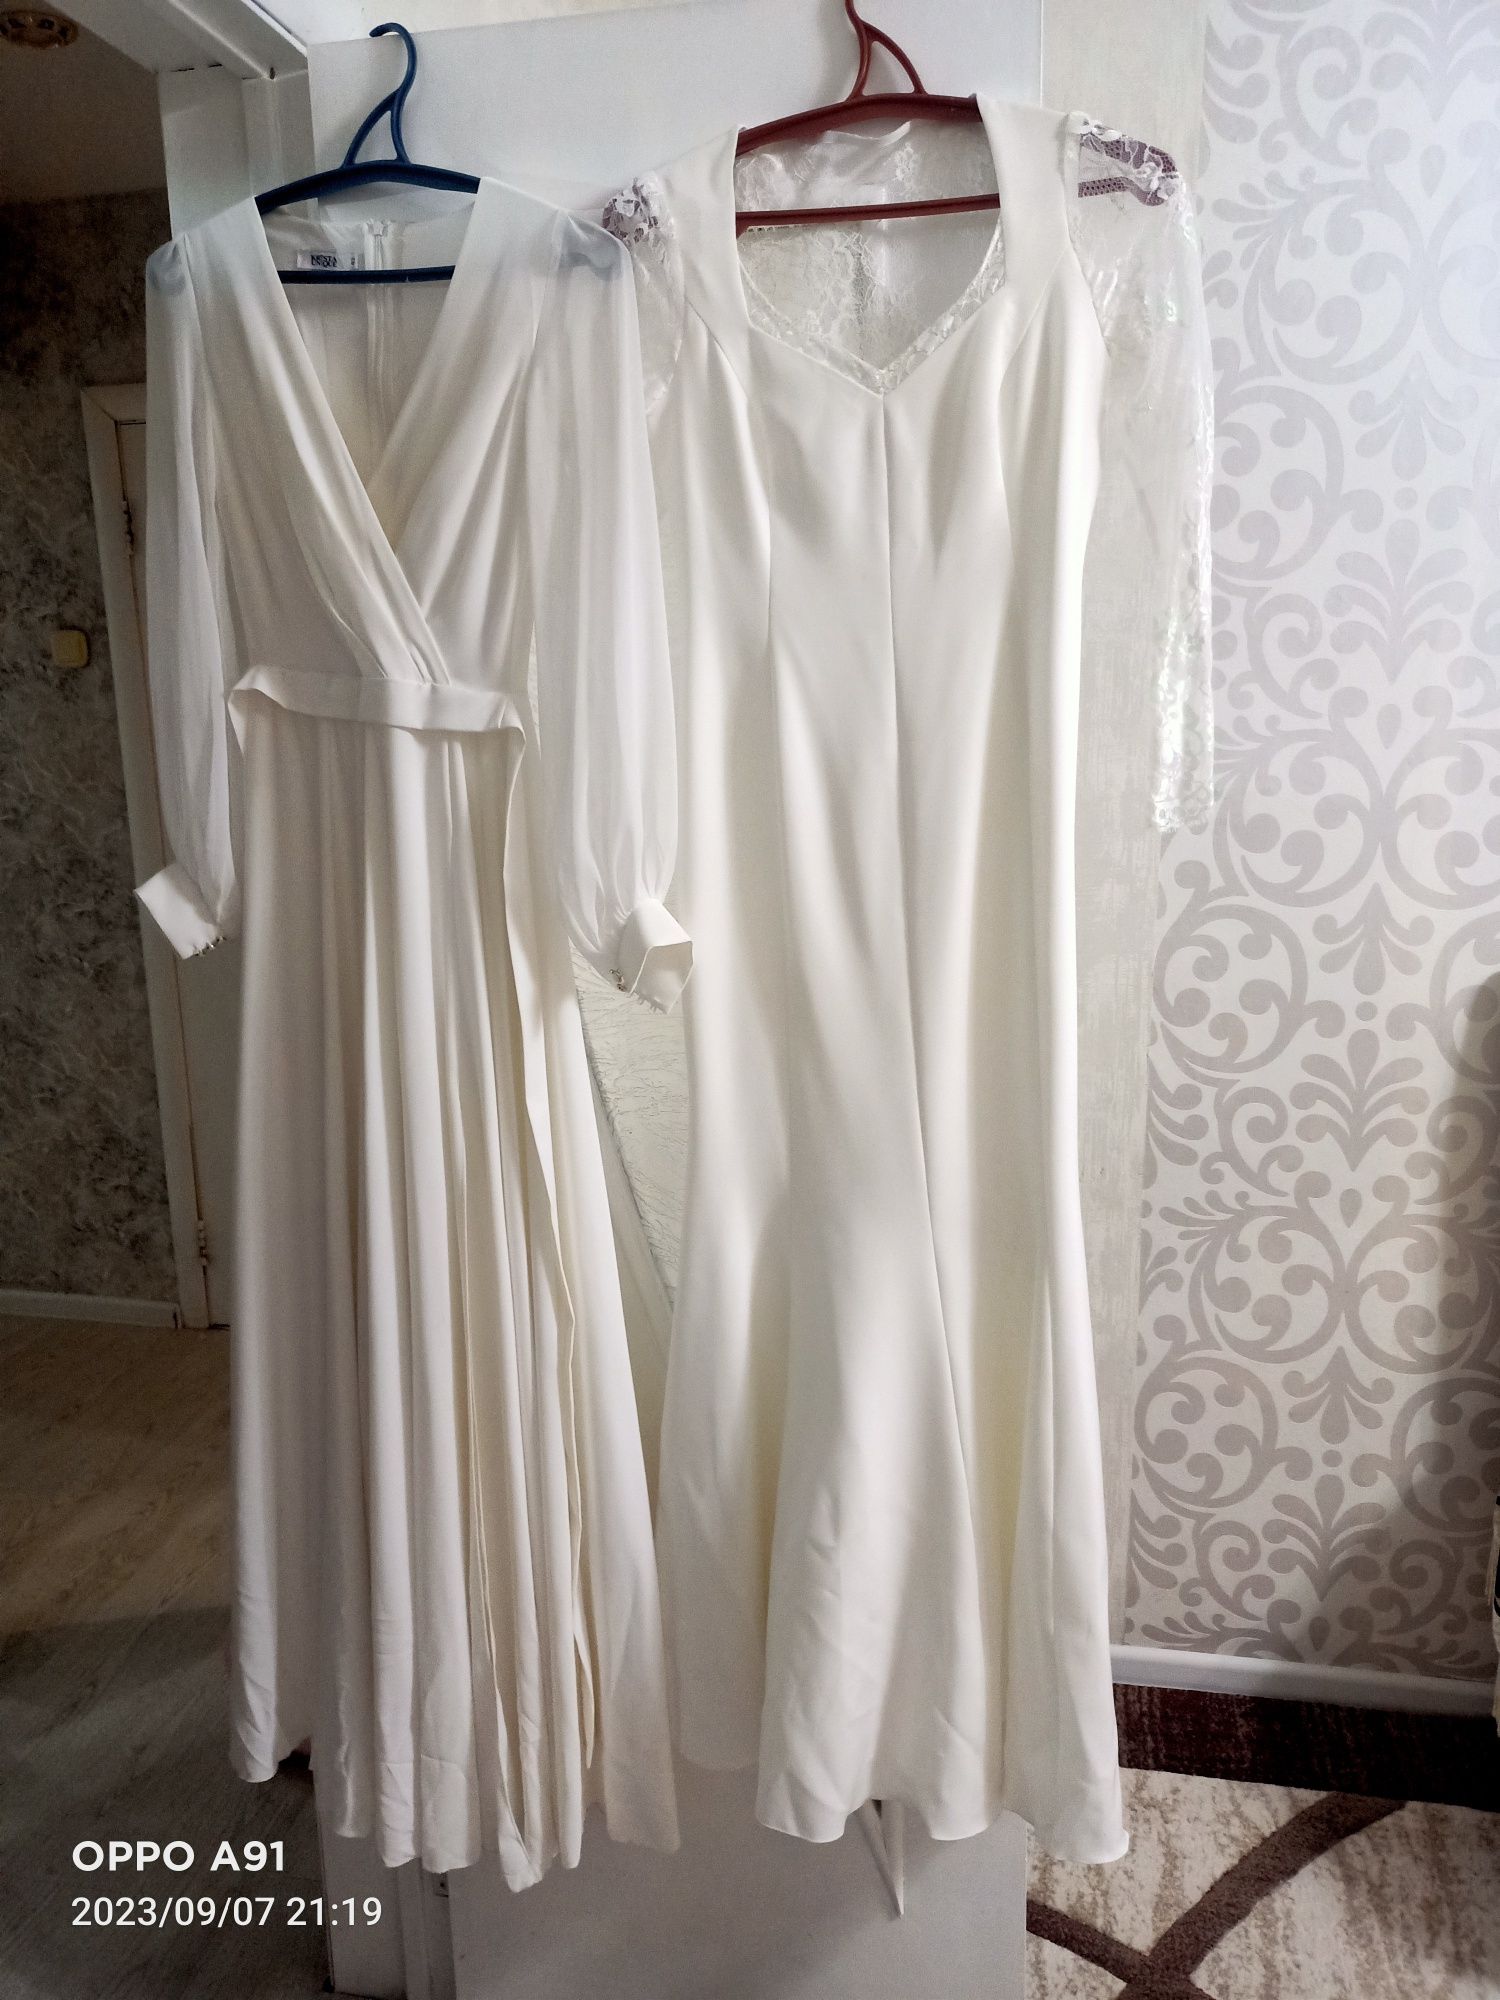 Продам платье белые вечерние размер 42